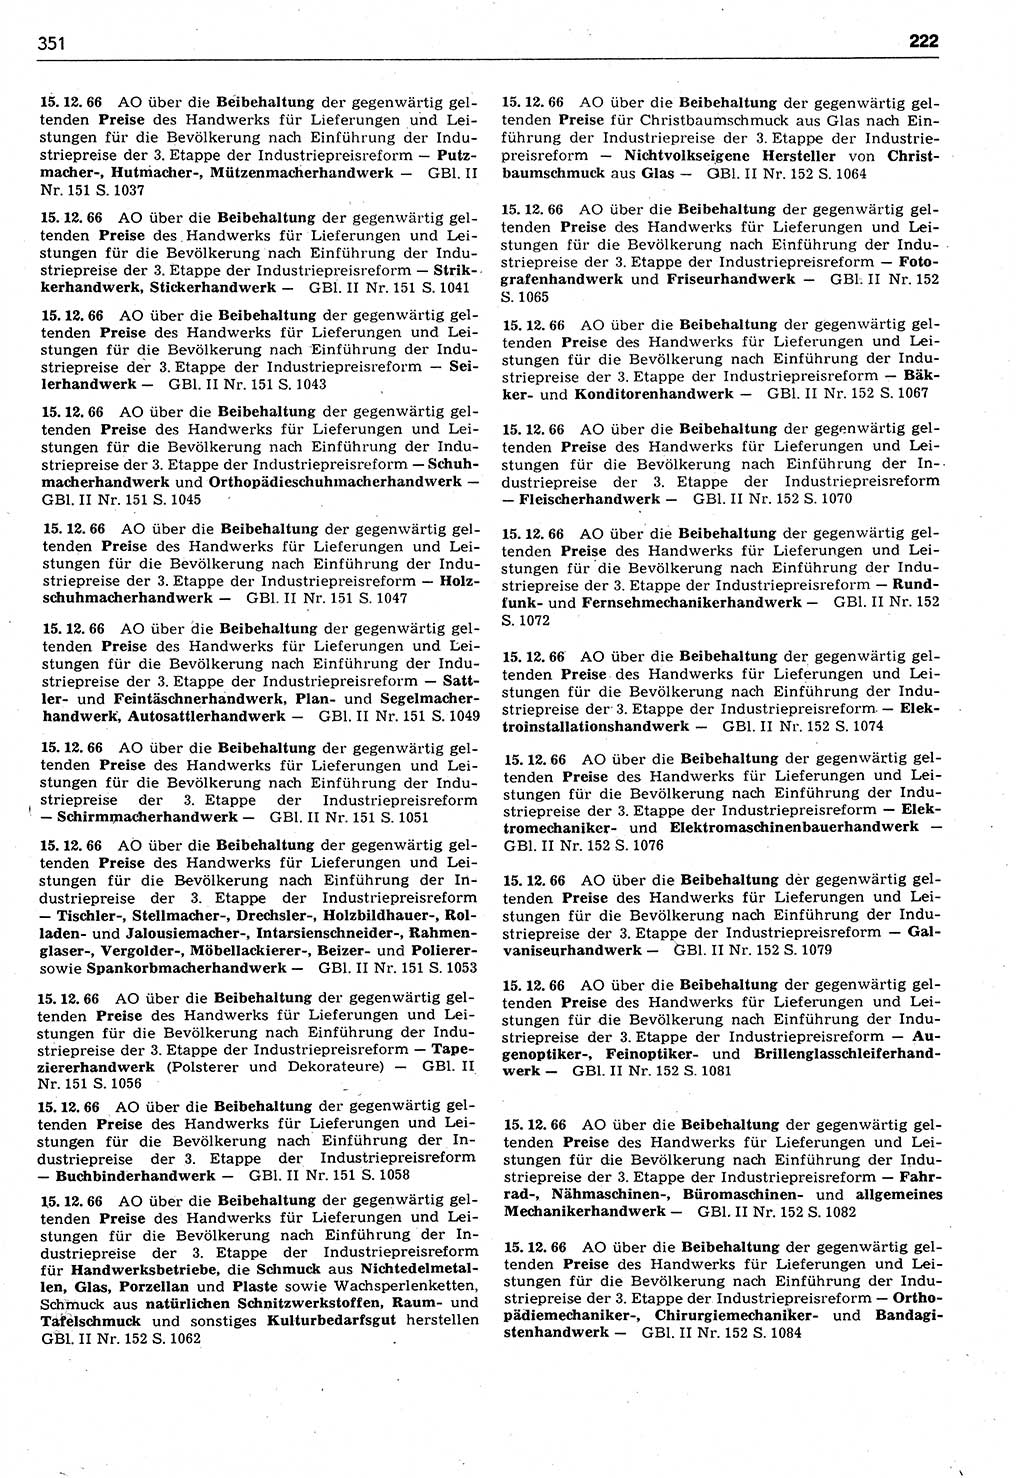 Das geltende Recht der Deutschen Demokratischen Republik (DDR) 1949-1988, Seite 351 (Gelt. R. DDR 1949-1988, S. 351)